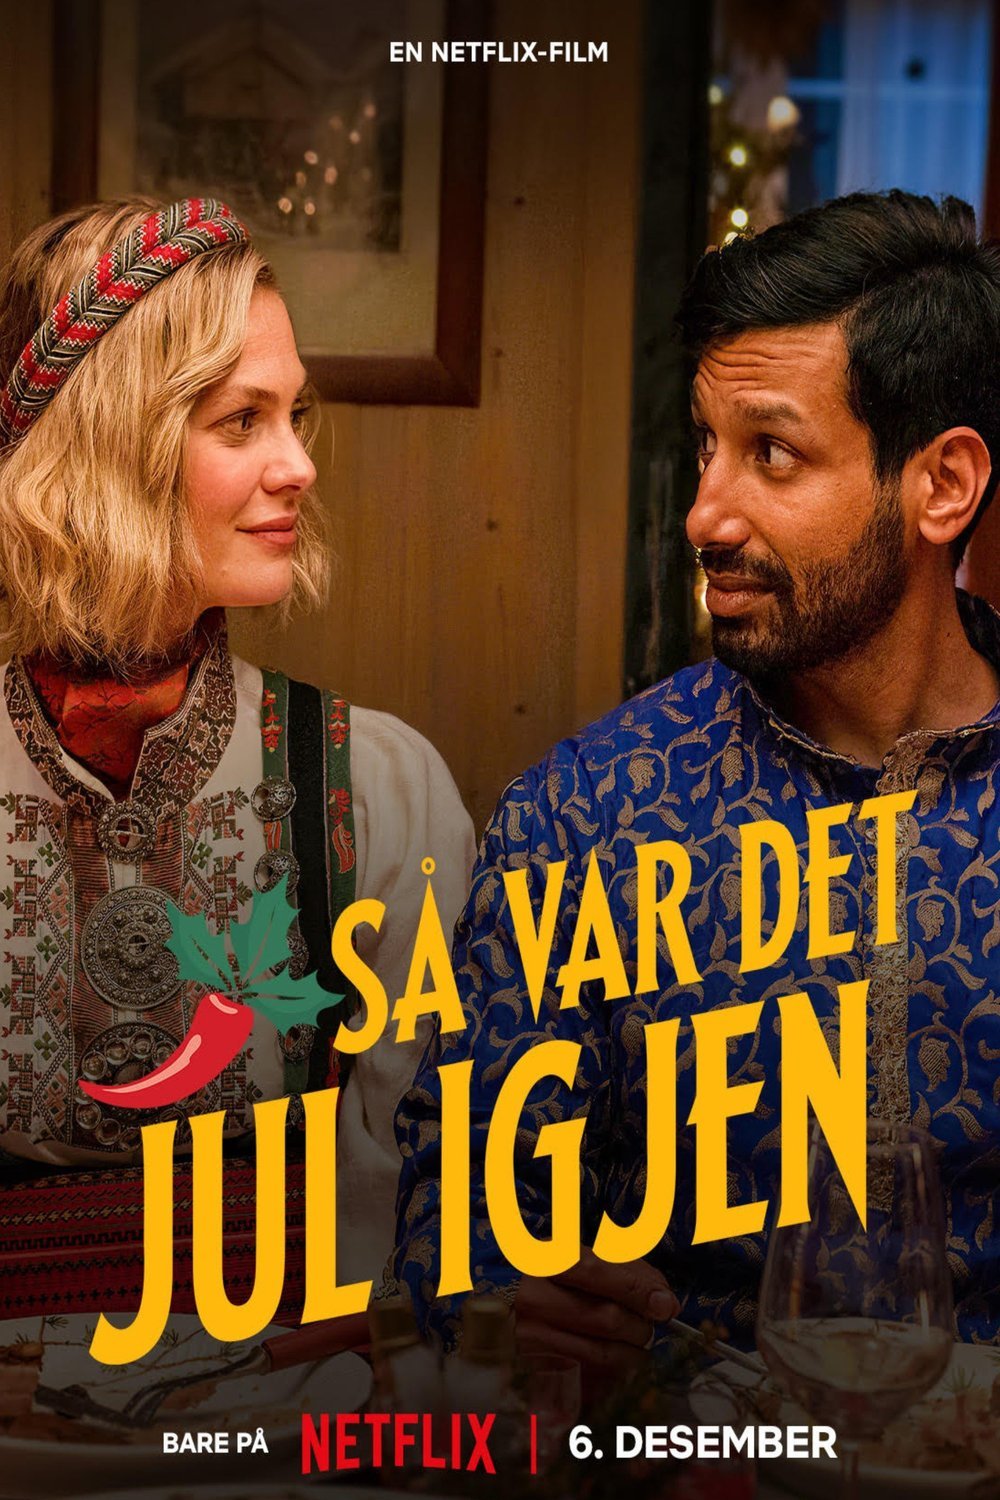 Norwegian poster of the movie Så var det jul igjen